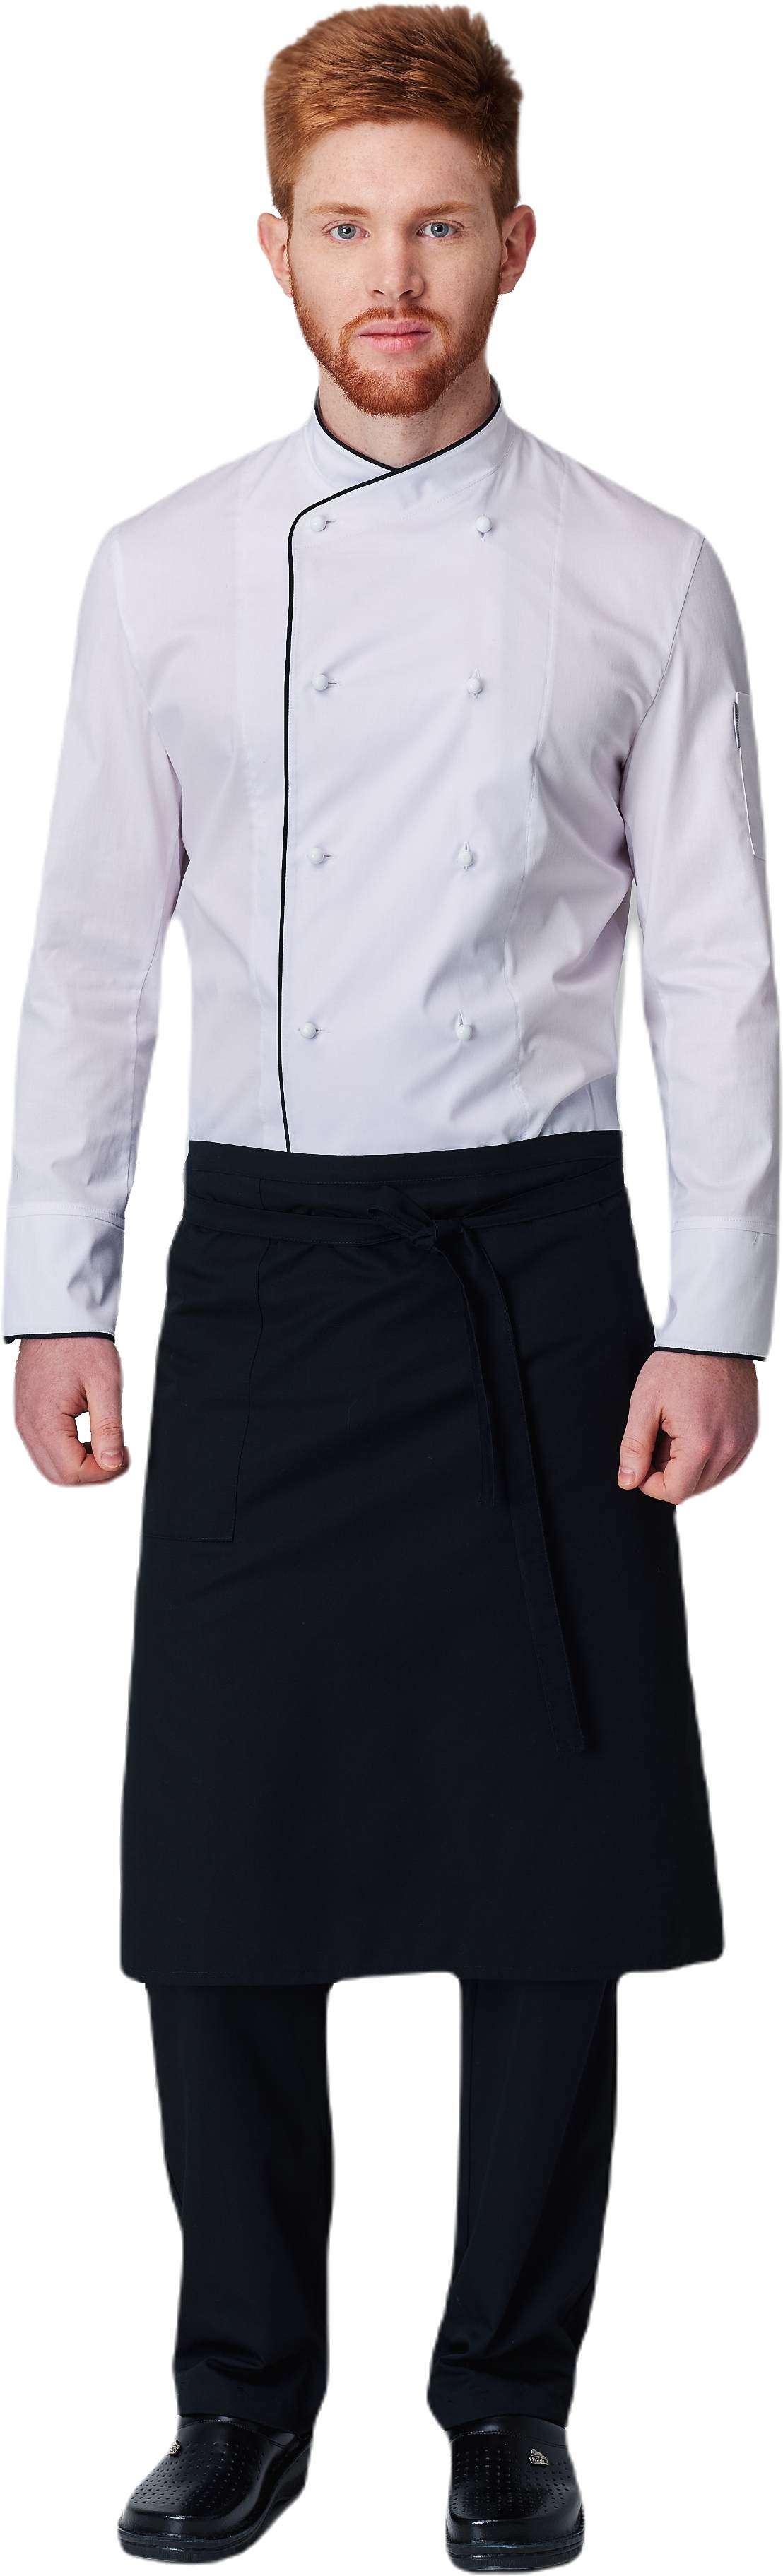 Комплект для повара SHEF - китель / фартук / брюки мужской белый